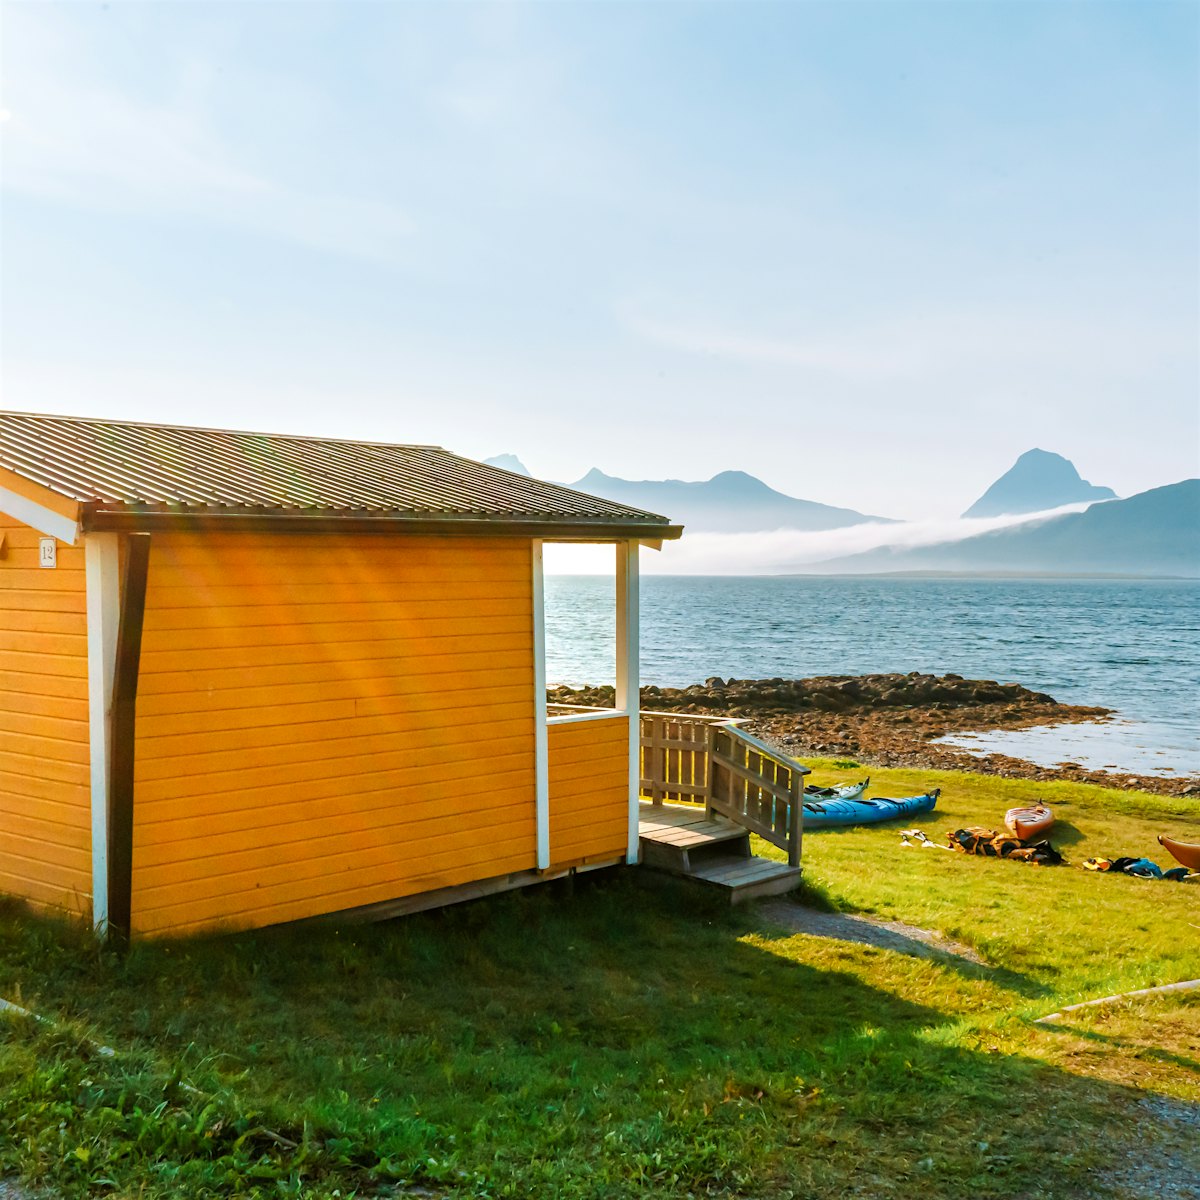 Gul hytte med utsikt til hav og fjell, med kajakker liggende foran hytte.